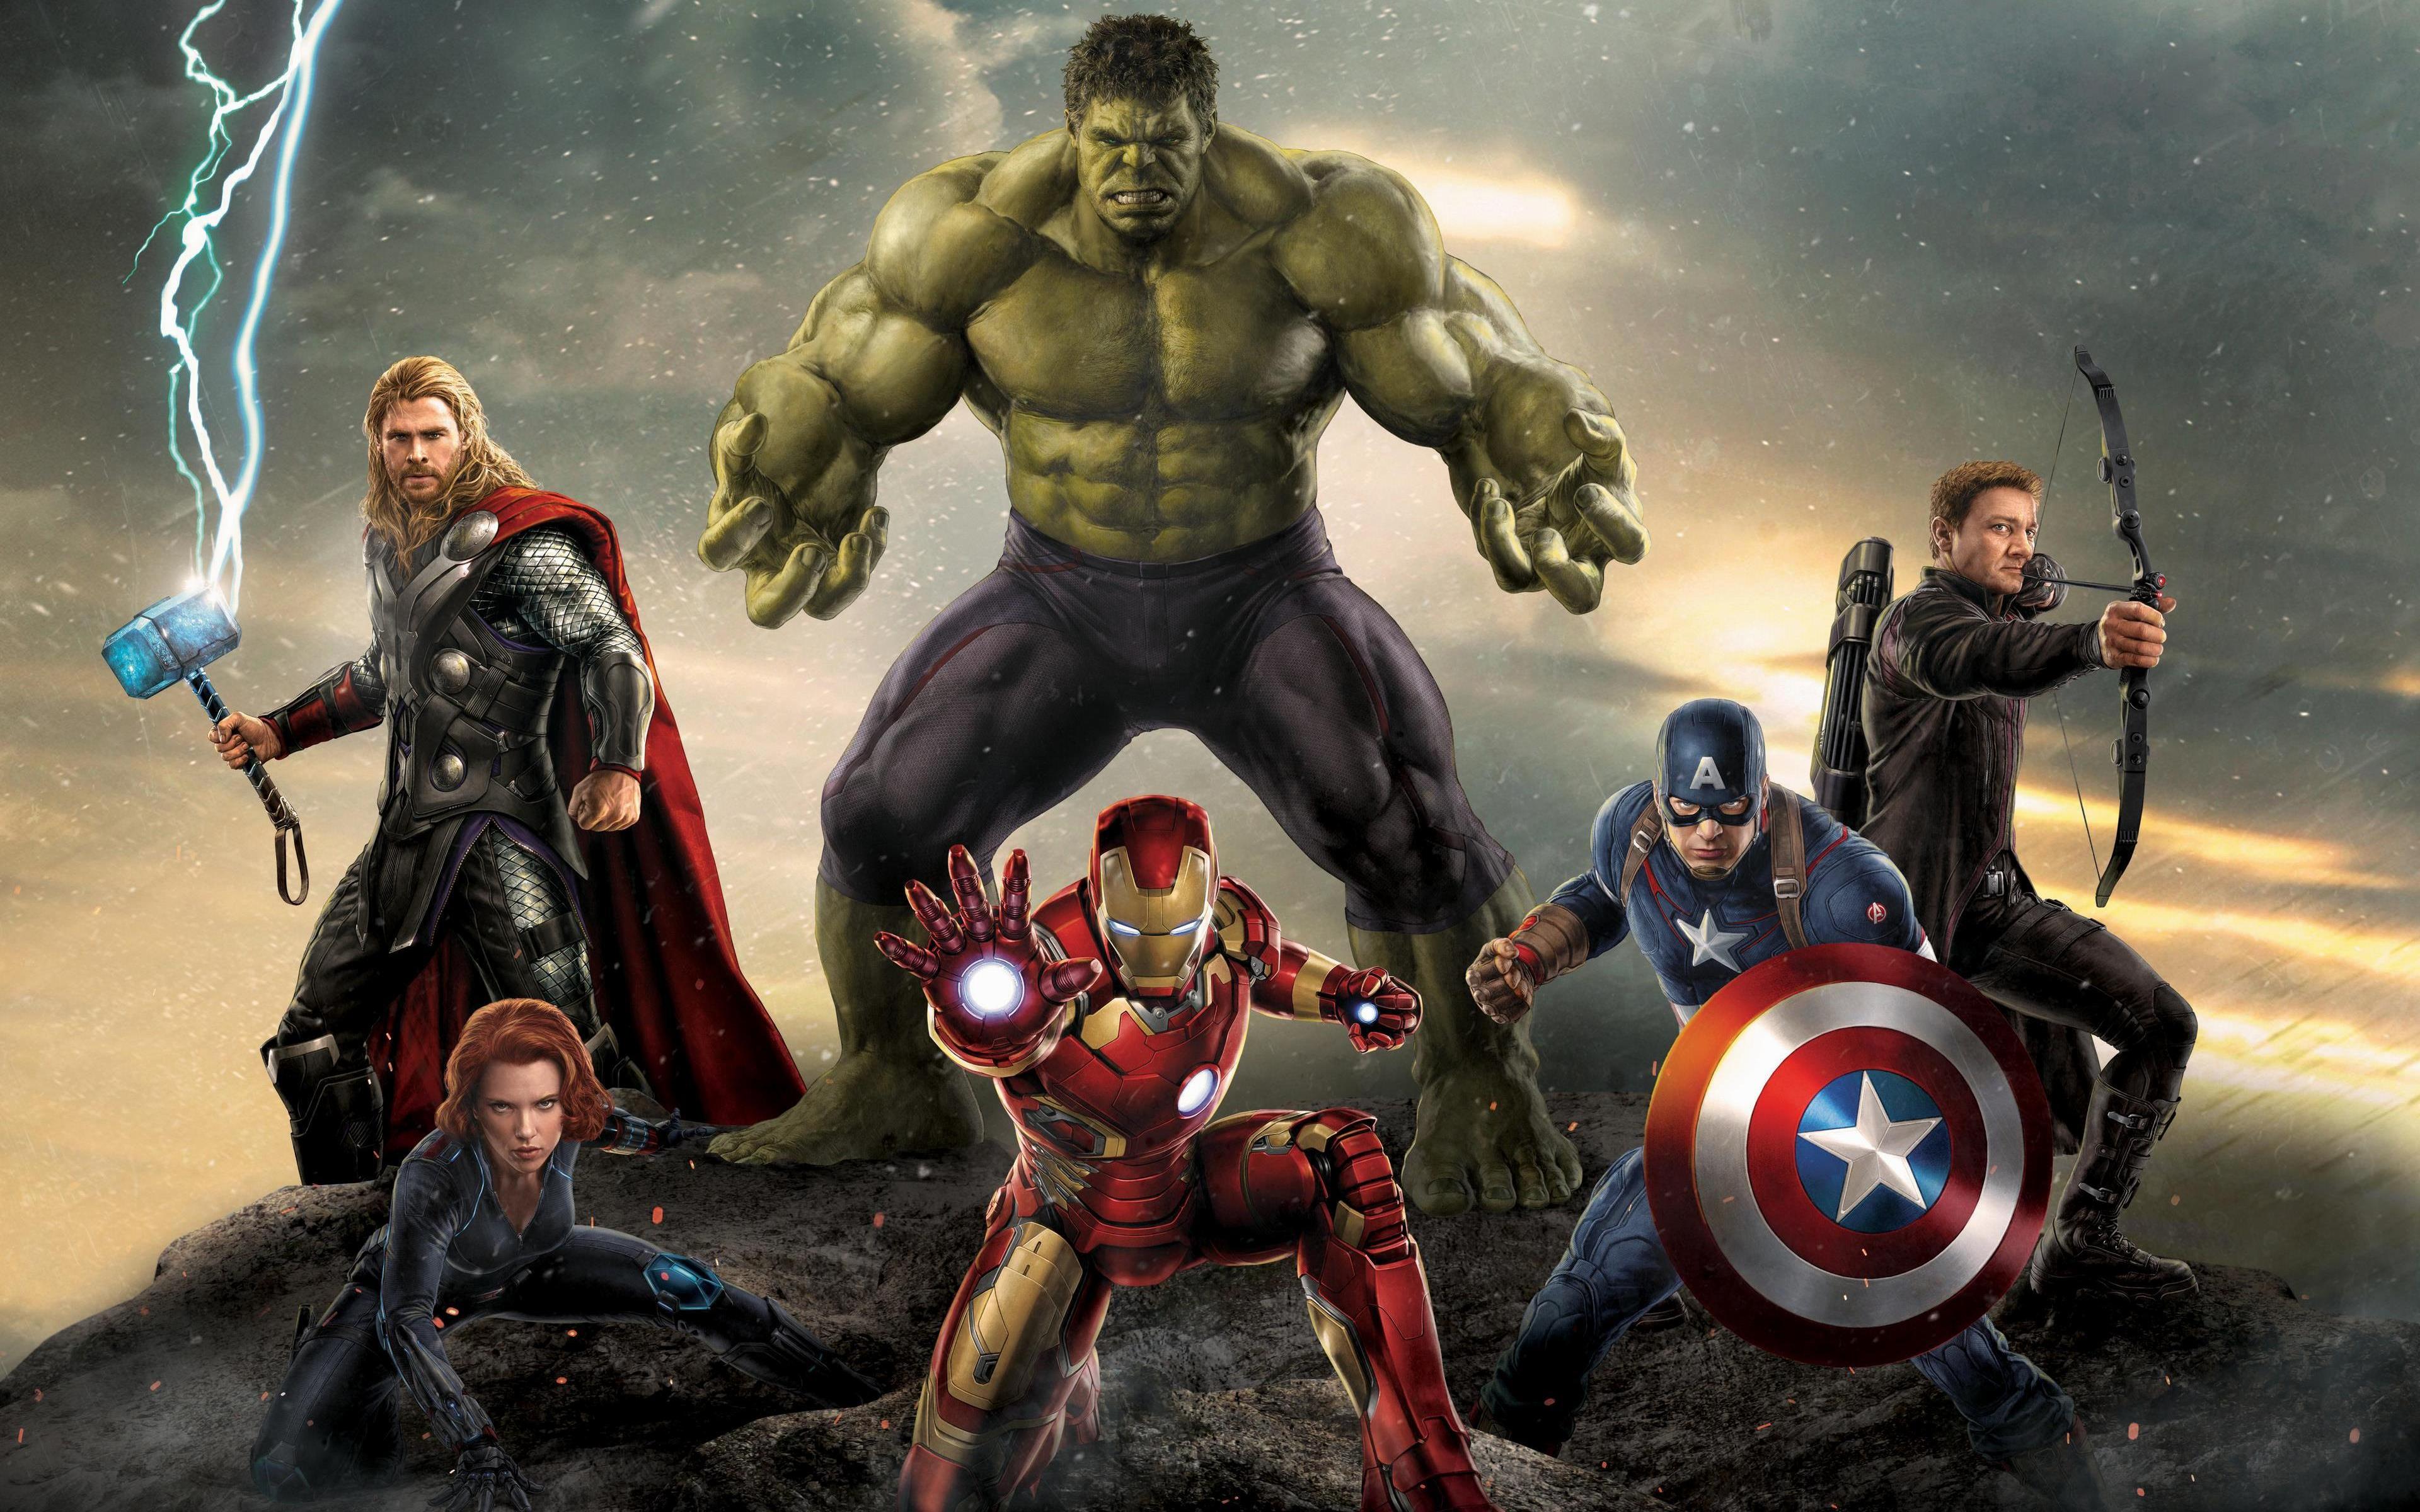 Avengers Superheroes Wallpaper For Desktop in HD 4K Size